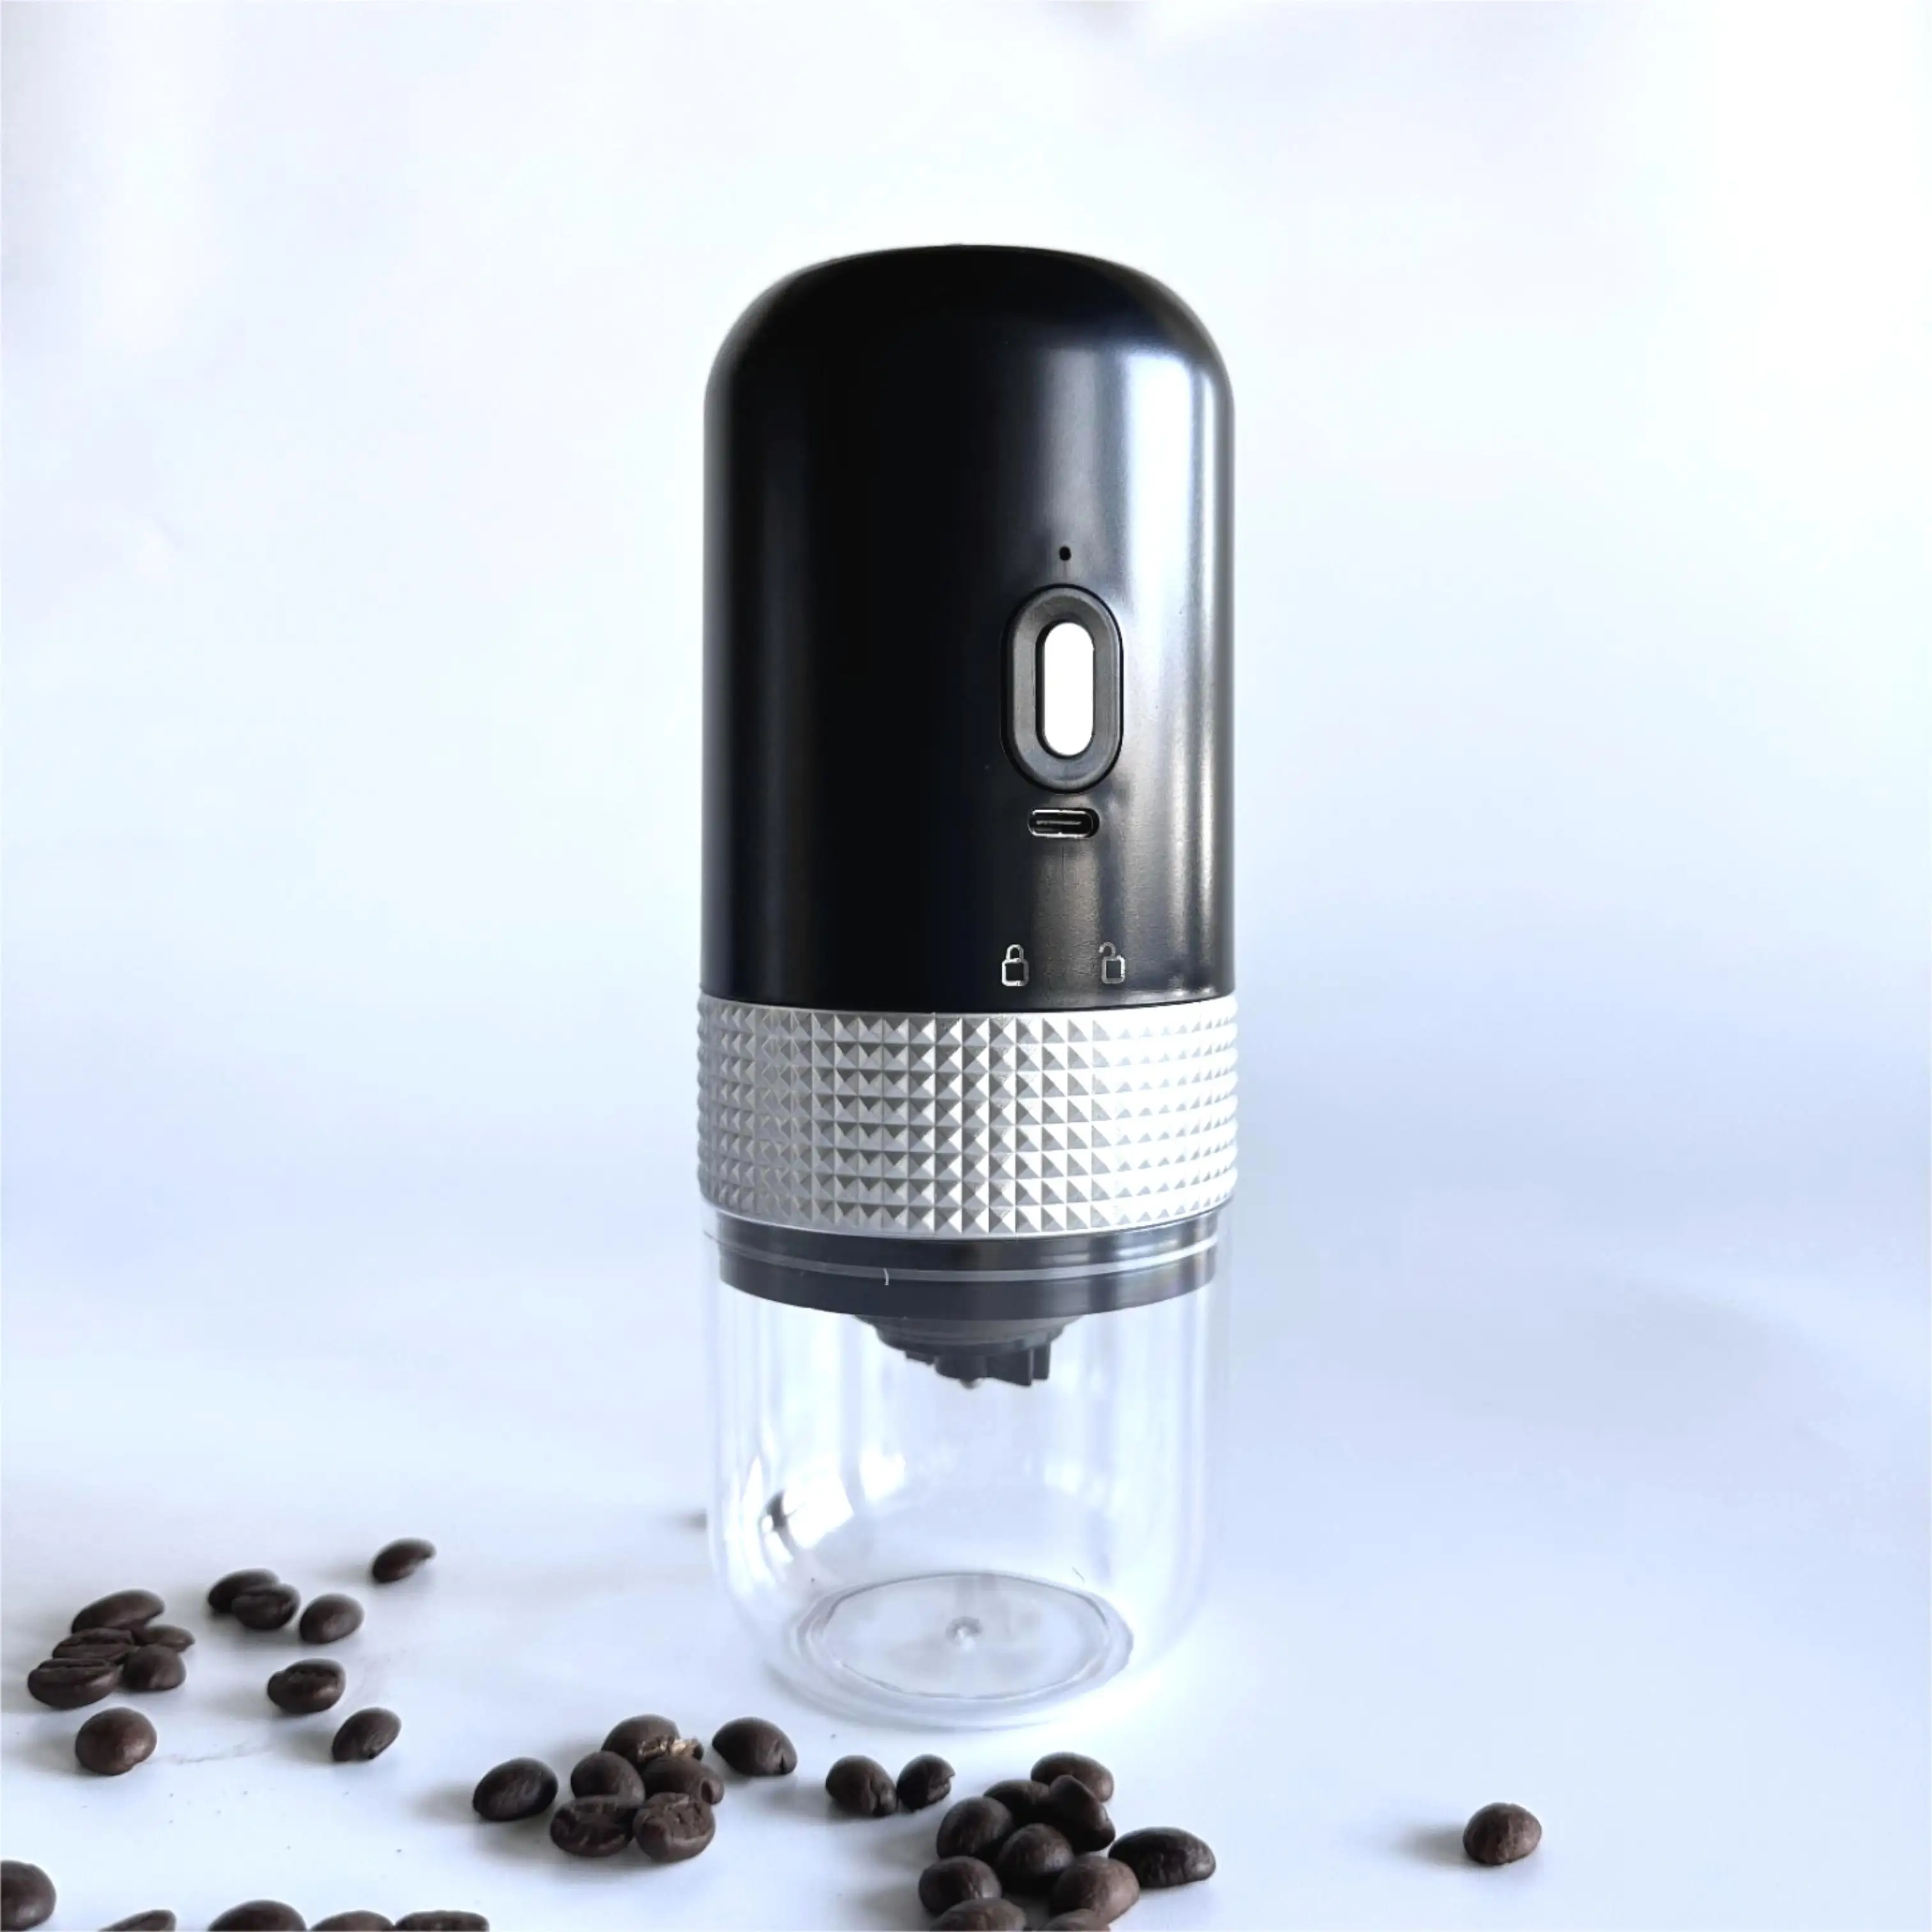 เครื่องบดกาแฟไฟฟ้าแบบชาร์จไฟได้ USB ขนาดเล็กสำหรับใช้ในครัวเรือน